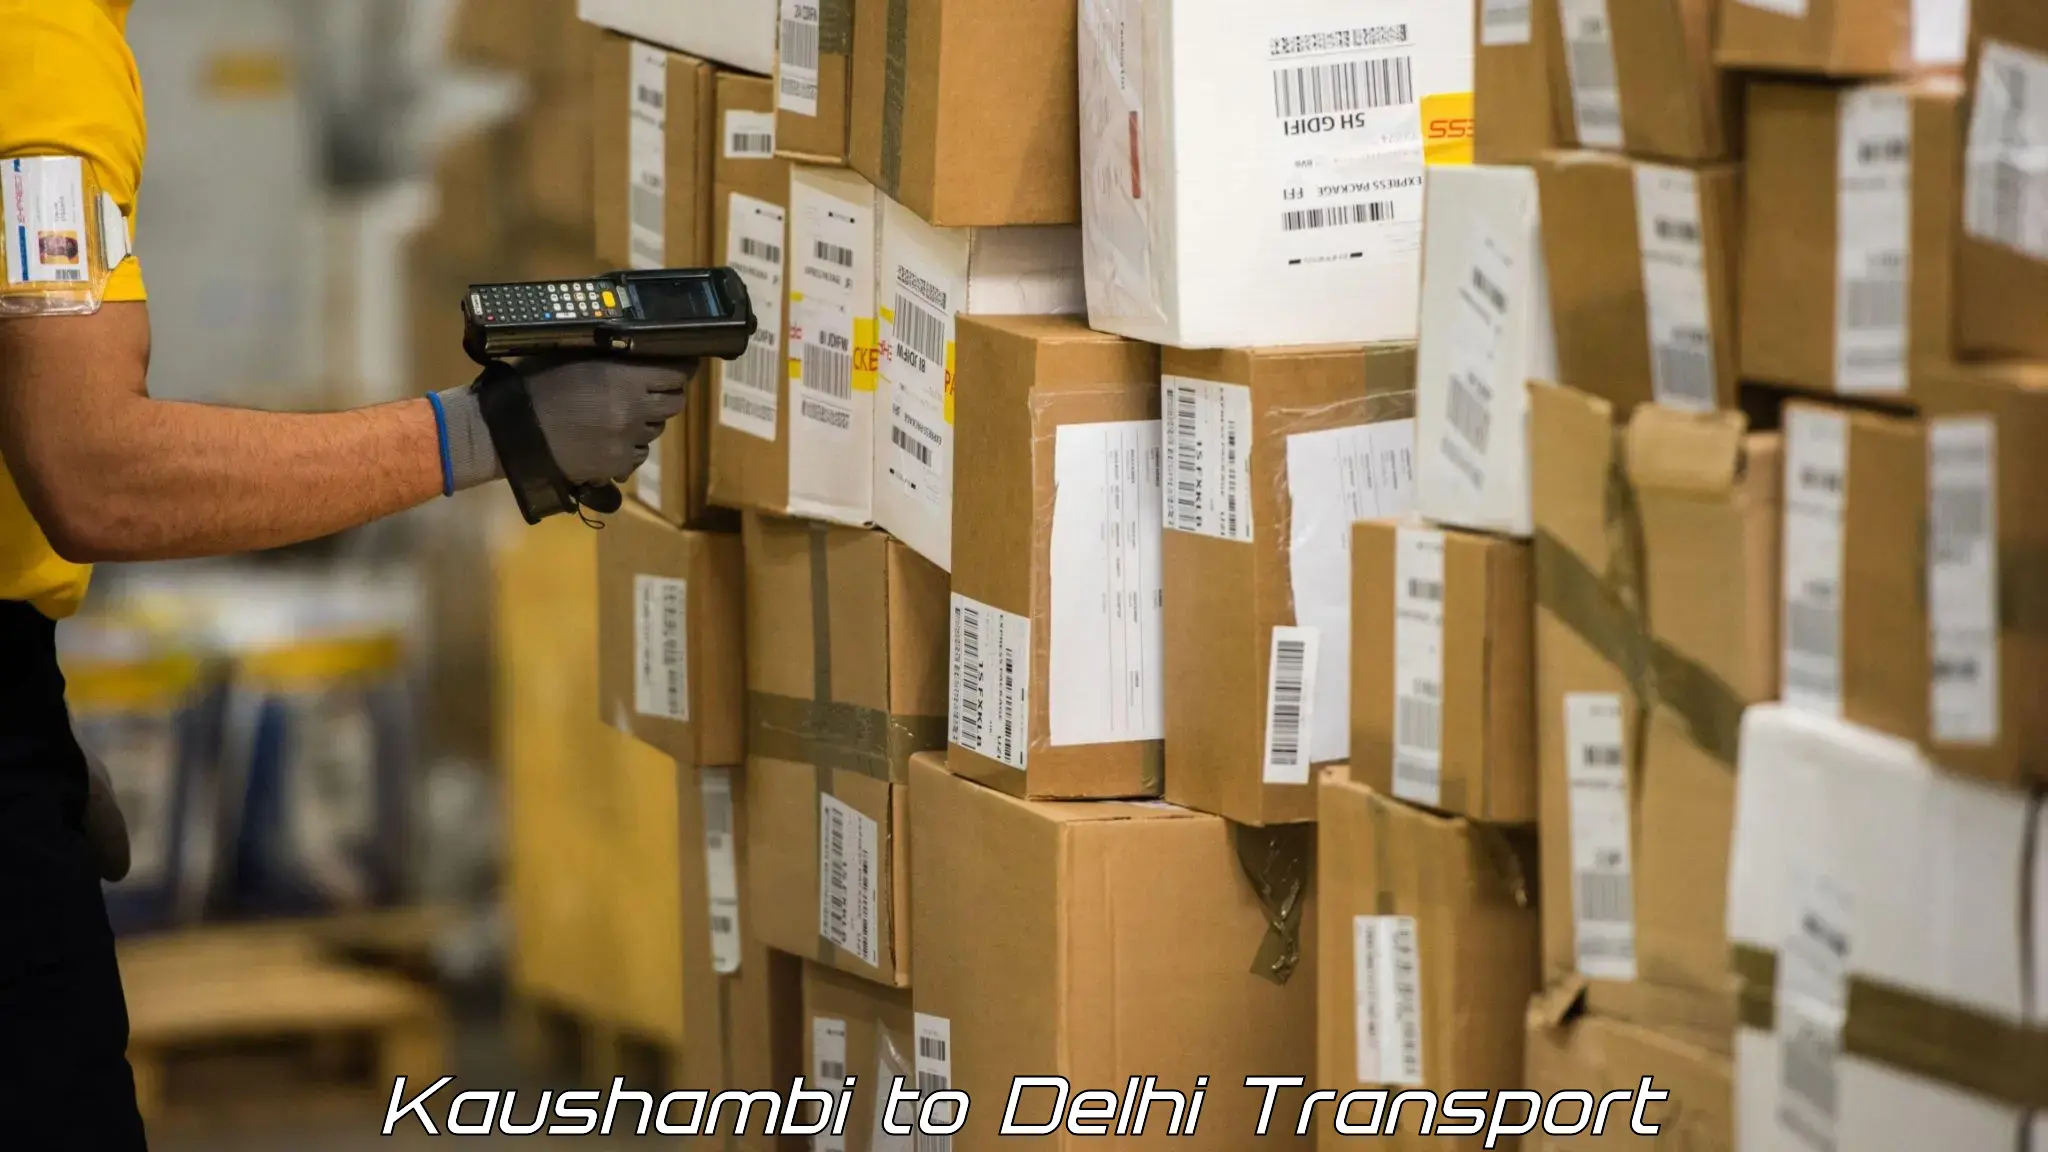 Truck transport companies in India Kaushambi to Delhi